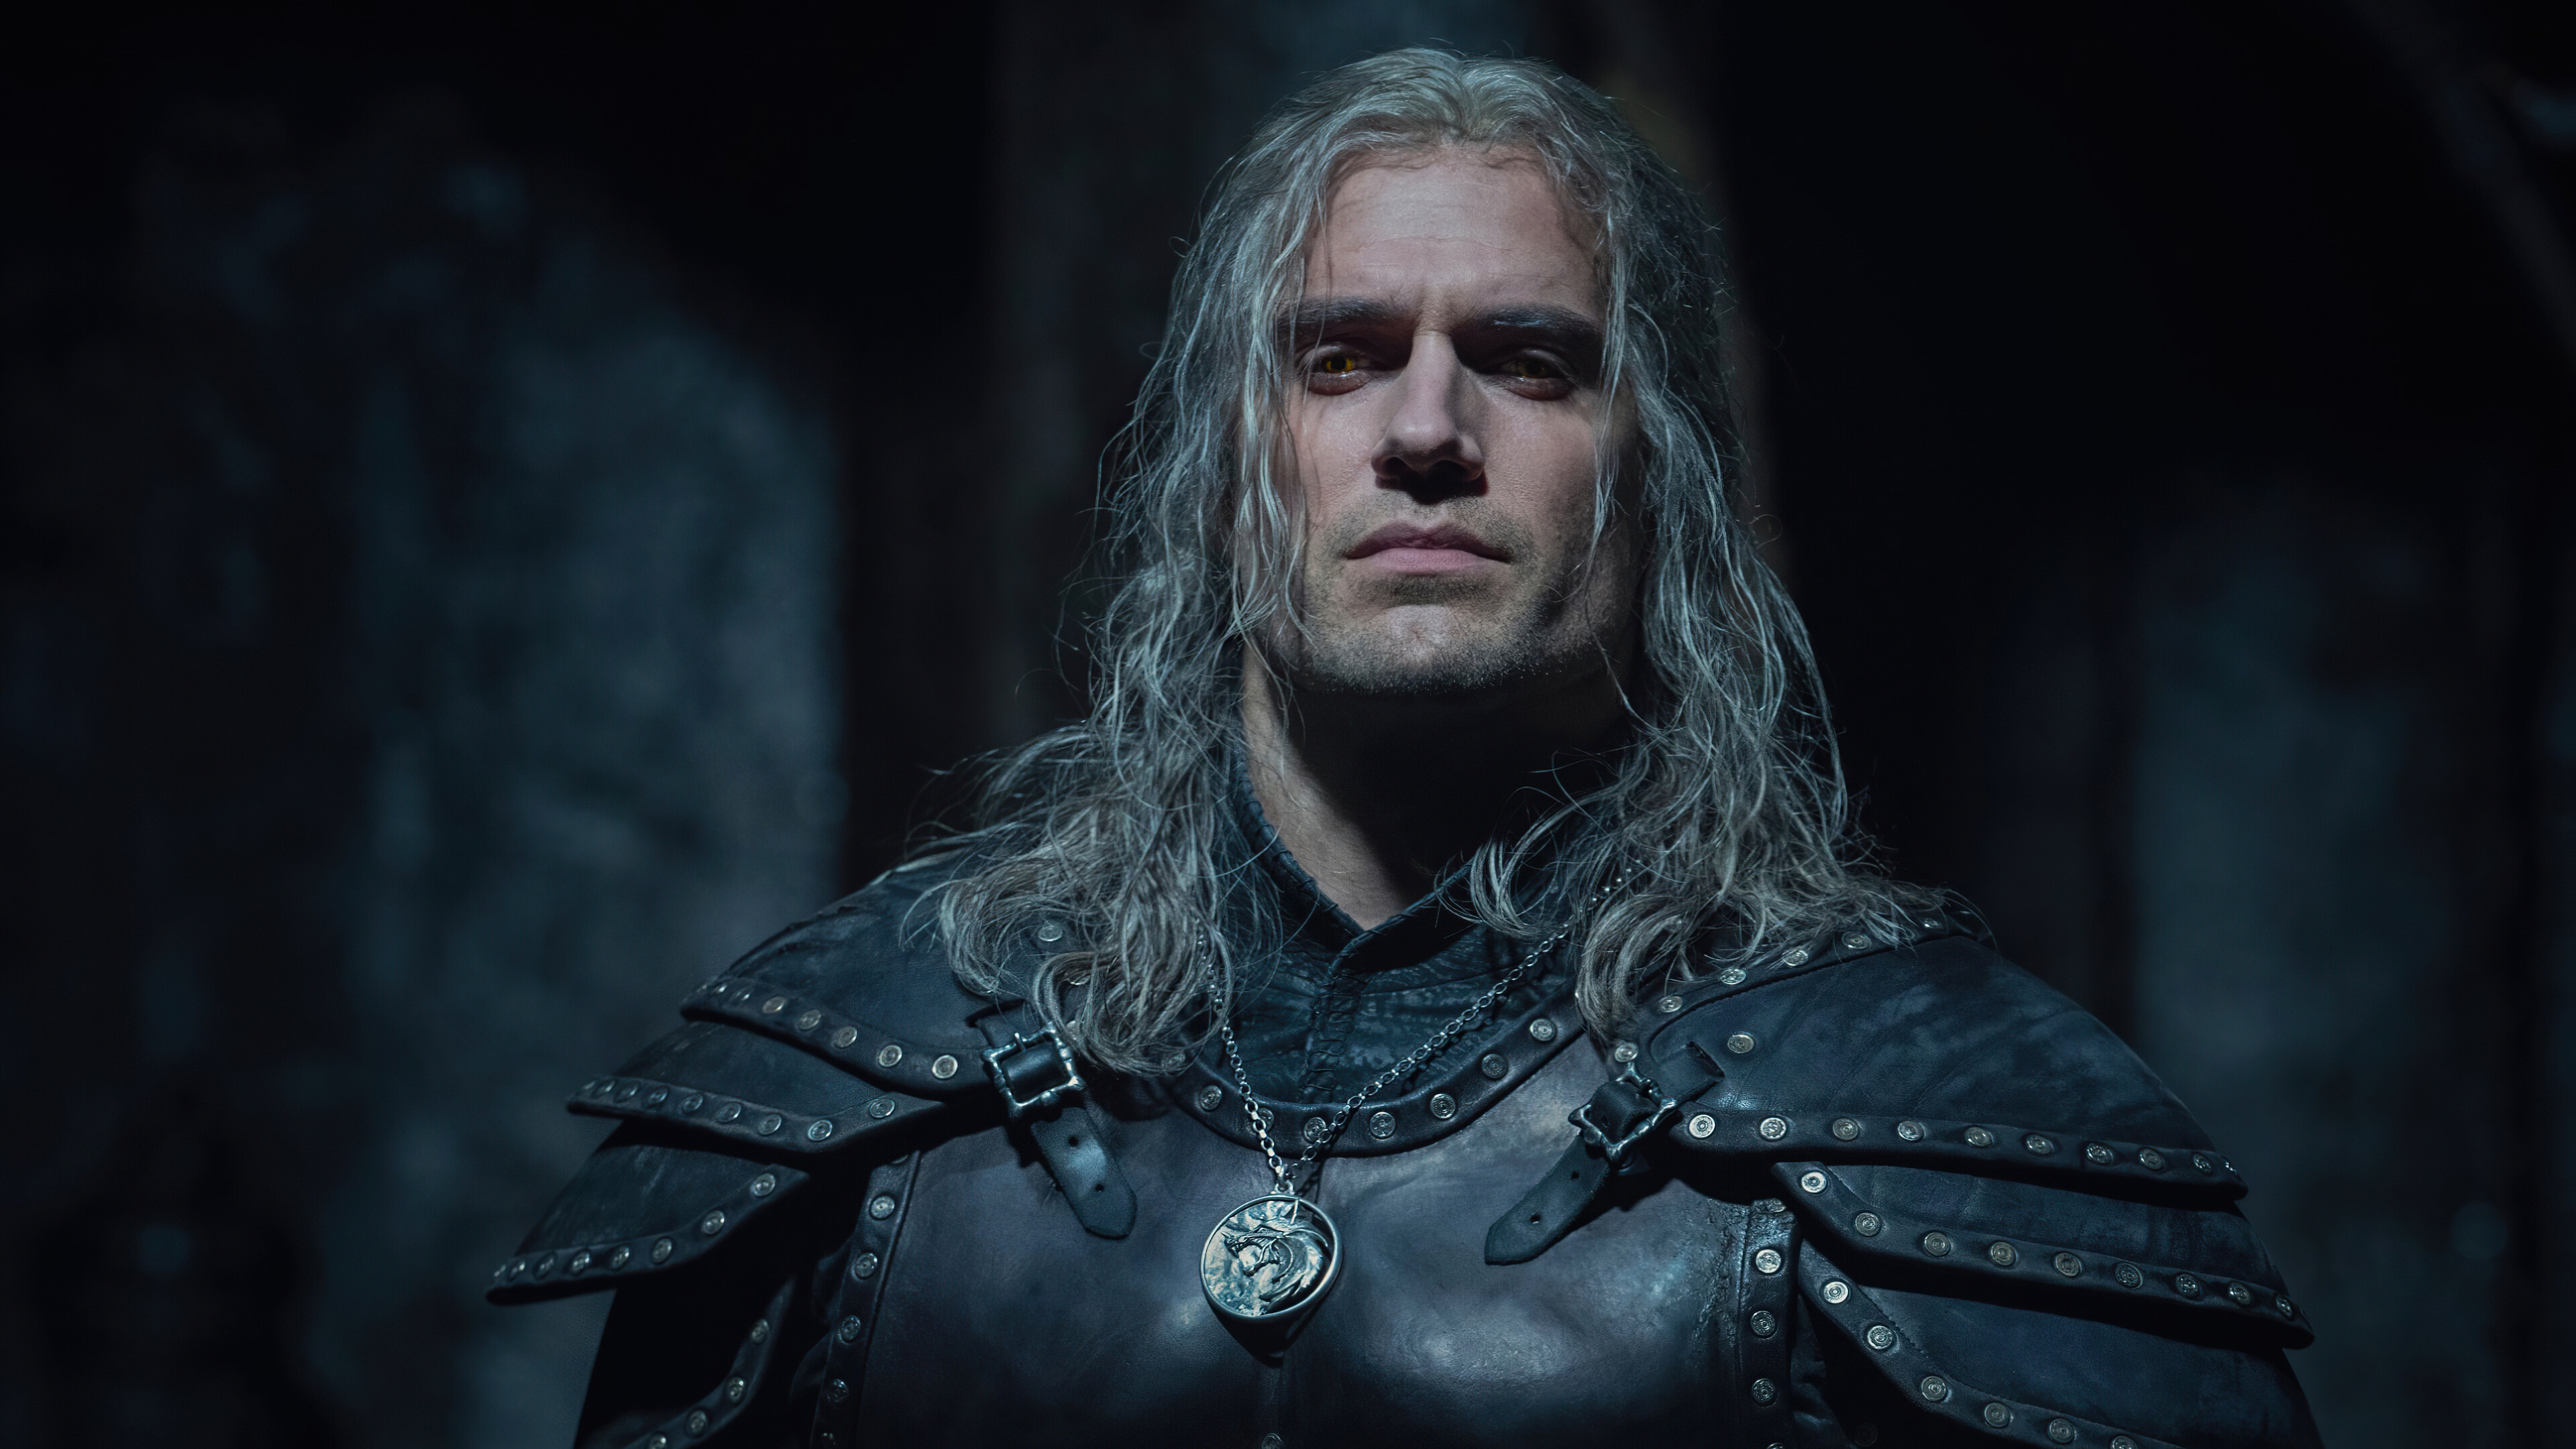 The Witcher (TV Series): TV show, Henry Cavill as Geralt of Rivia. 3840x2160 4K Wallpaper.